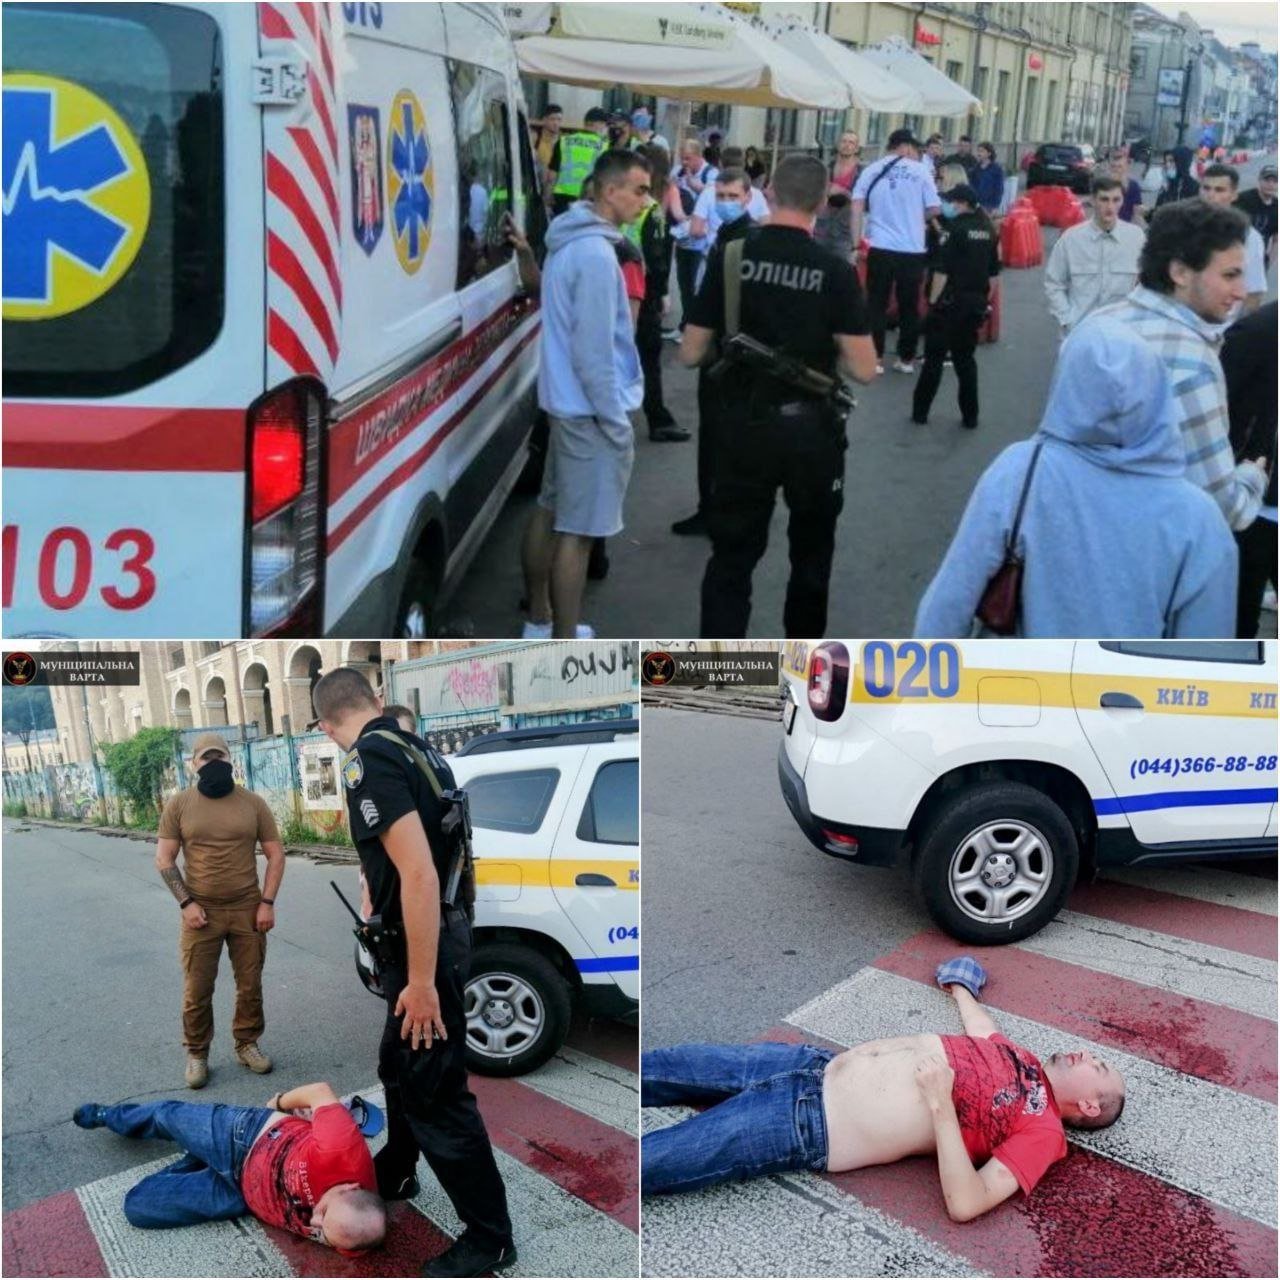 В Киеве пьяный мужчина напал на подростков. Есть пострадавшие, - ВИДЕО